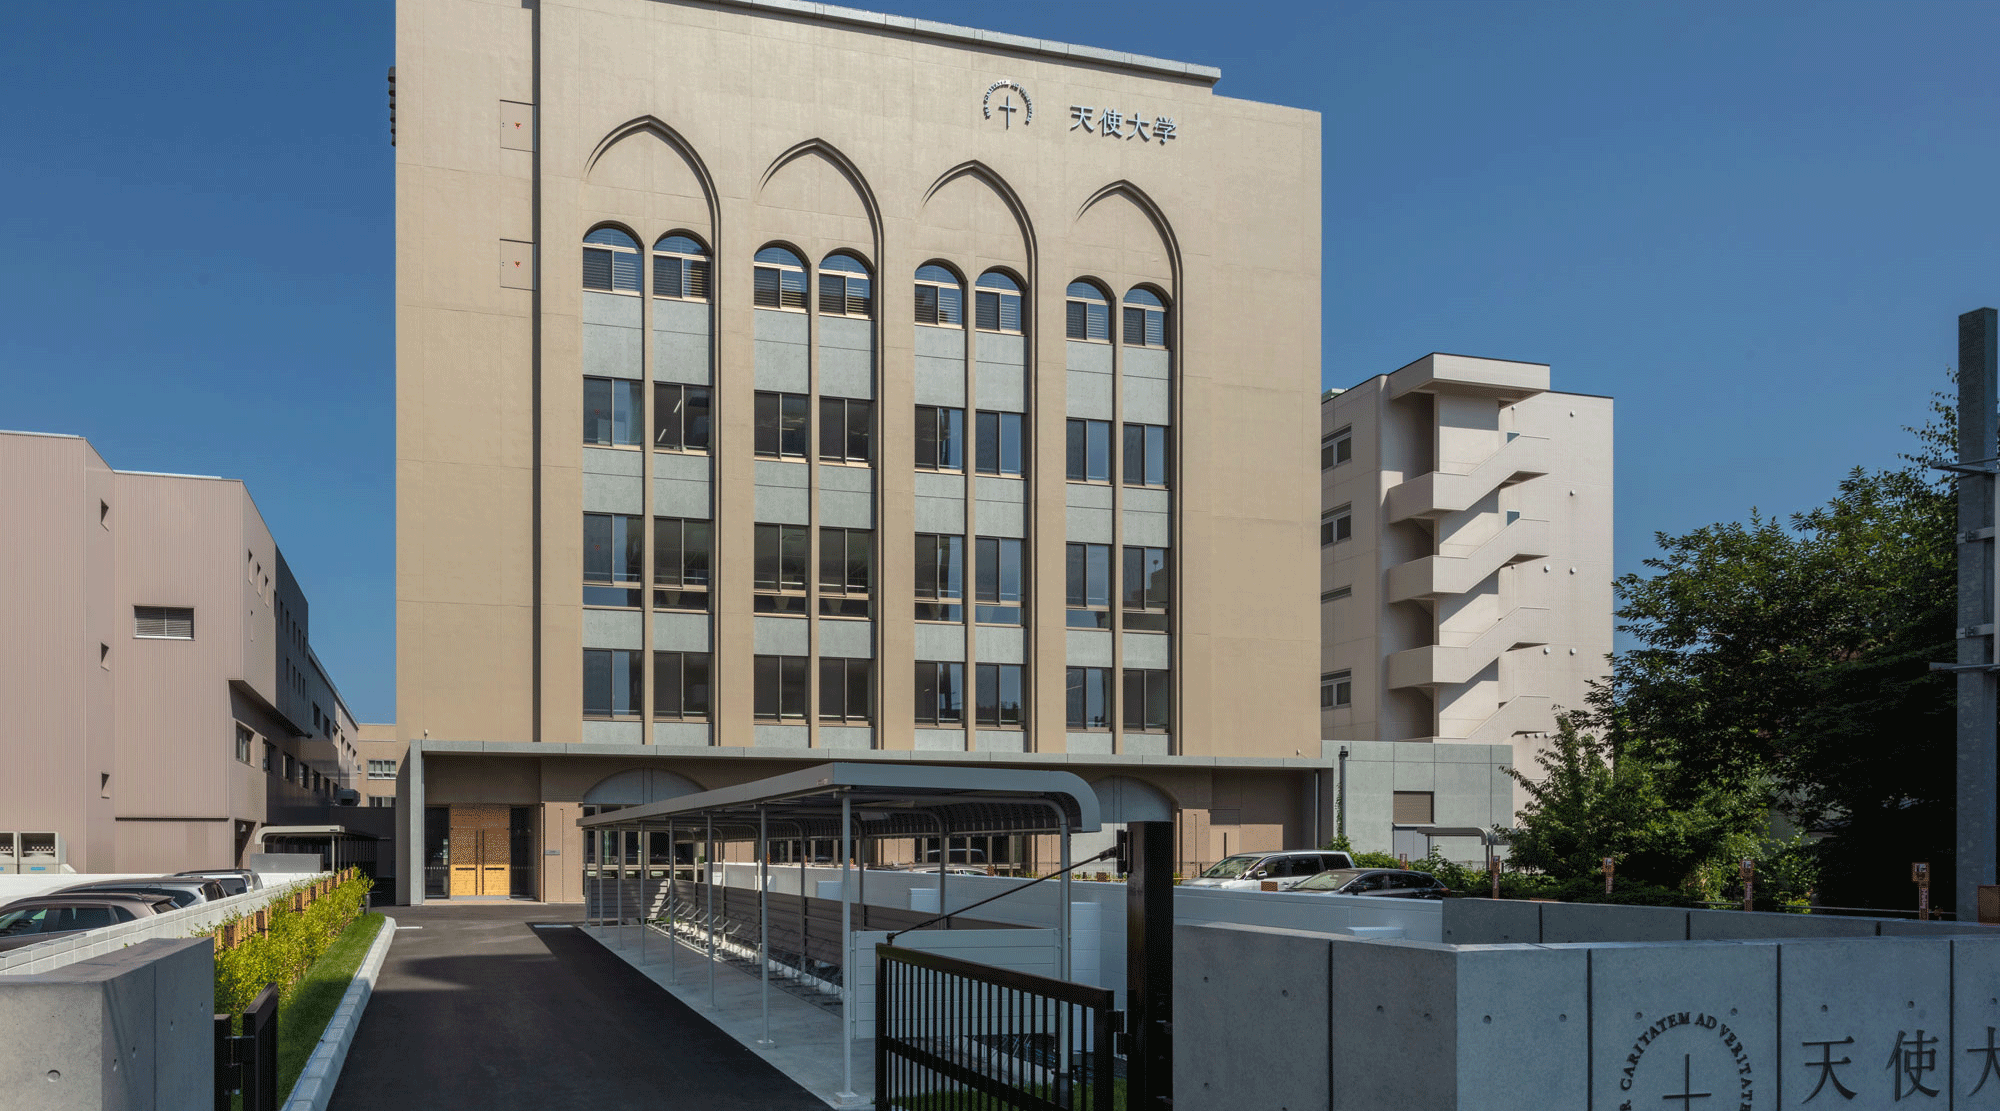 TENSHI COLLEGE School Building No. 2